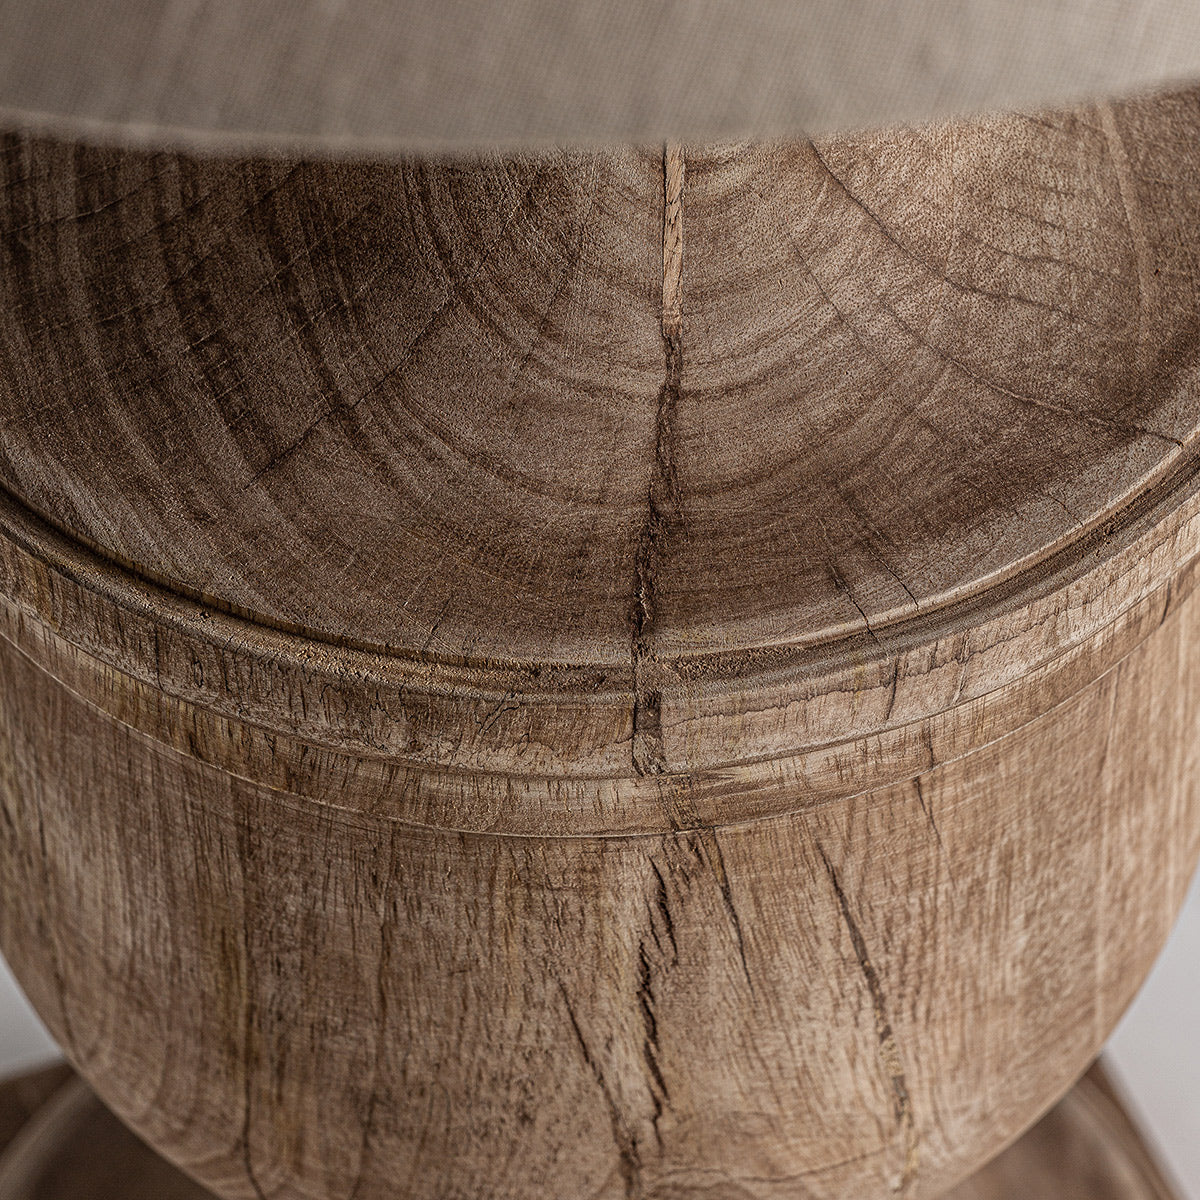 A provanszi stílusú asztali lámpa mangófa talapzatának részlete.